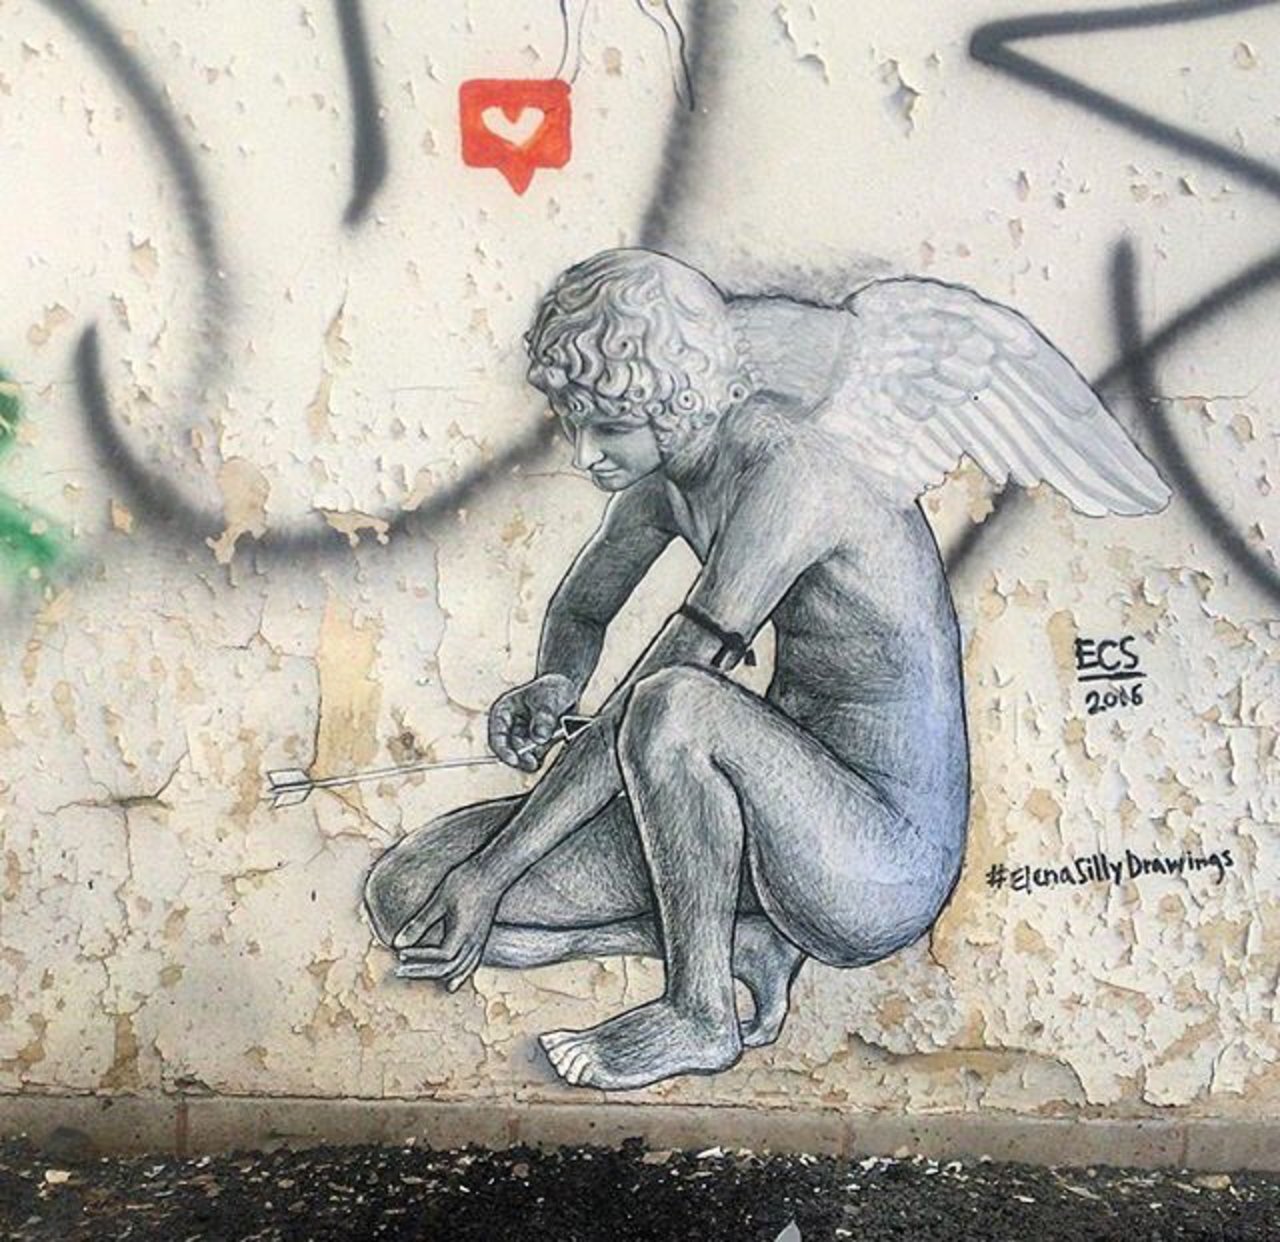 New Street Art by ECSTel Aviv#streetart #graffiti #mural #art https://t.co/E3i7zSy0i0